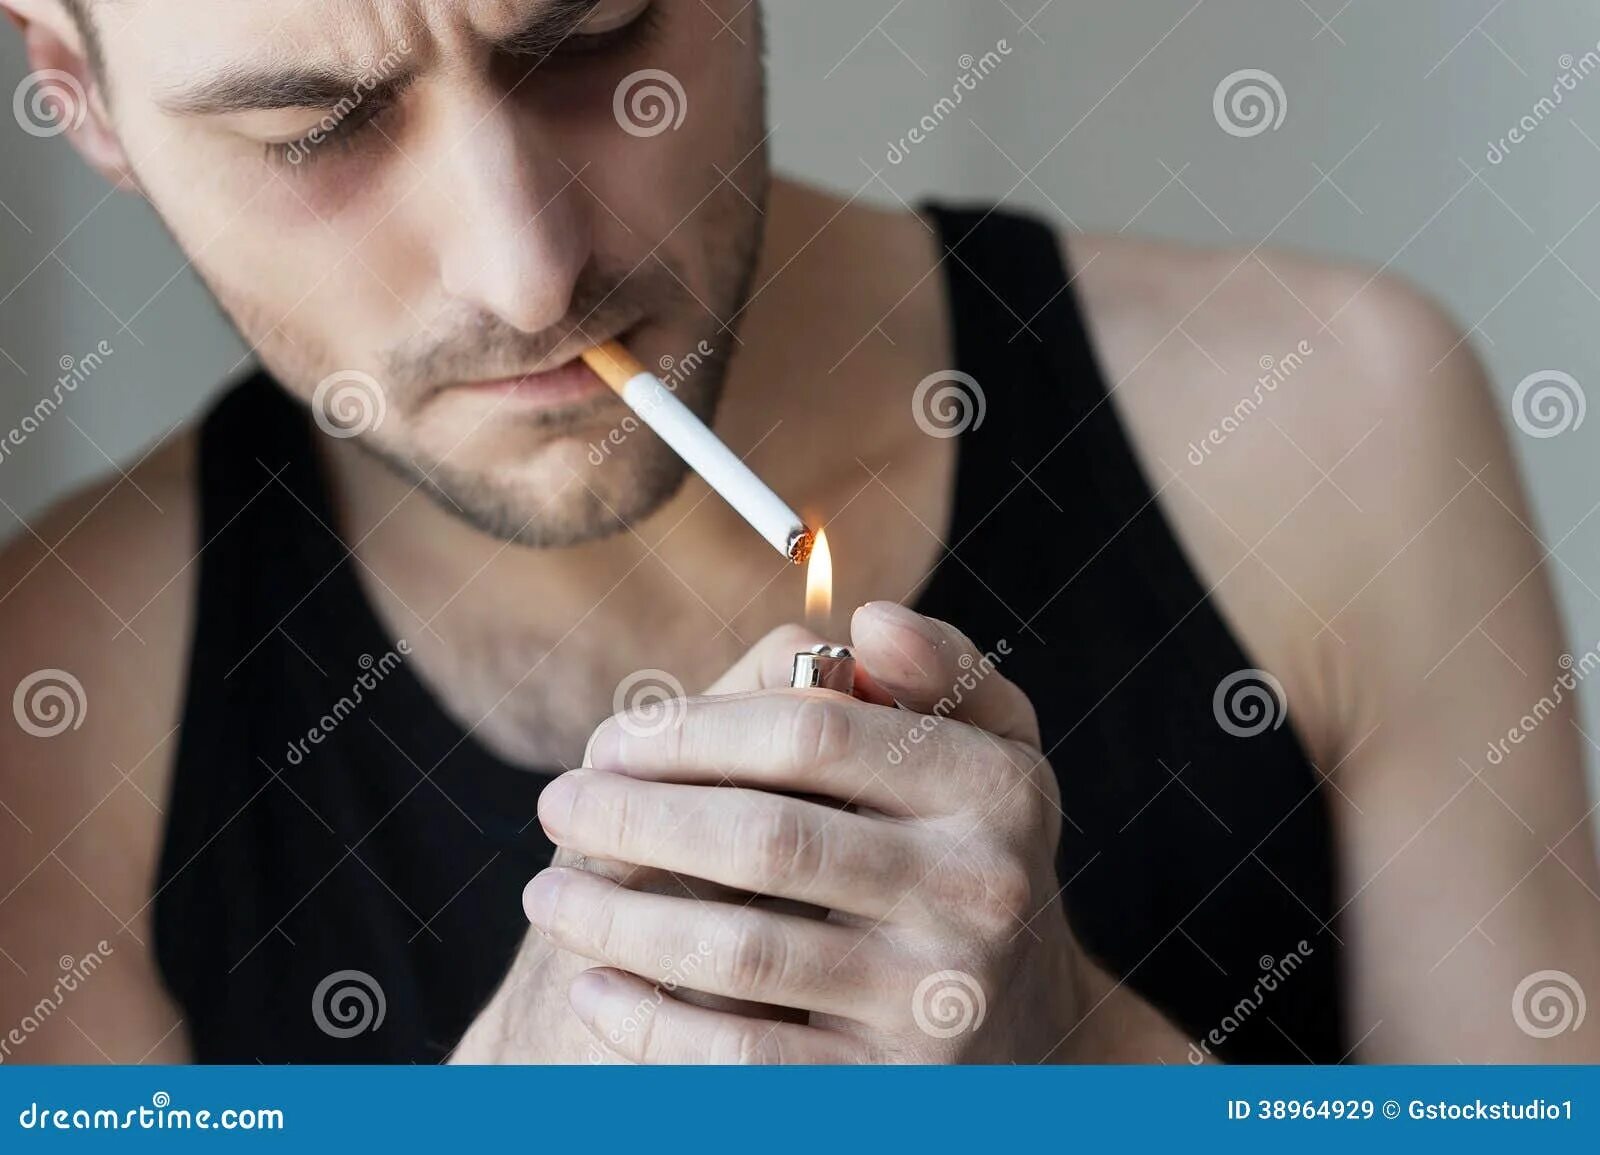 Запах сигарет в носу. Человек с огромной сигаретой. Большая сигарета. Мужчина прикуривает сигарету рисунок. Человек закуривает сигарету референс.